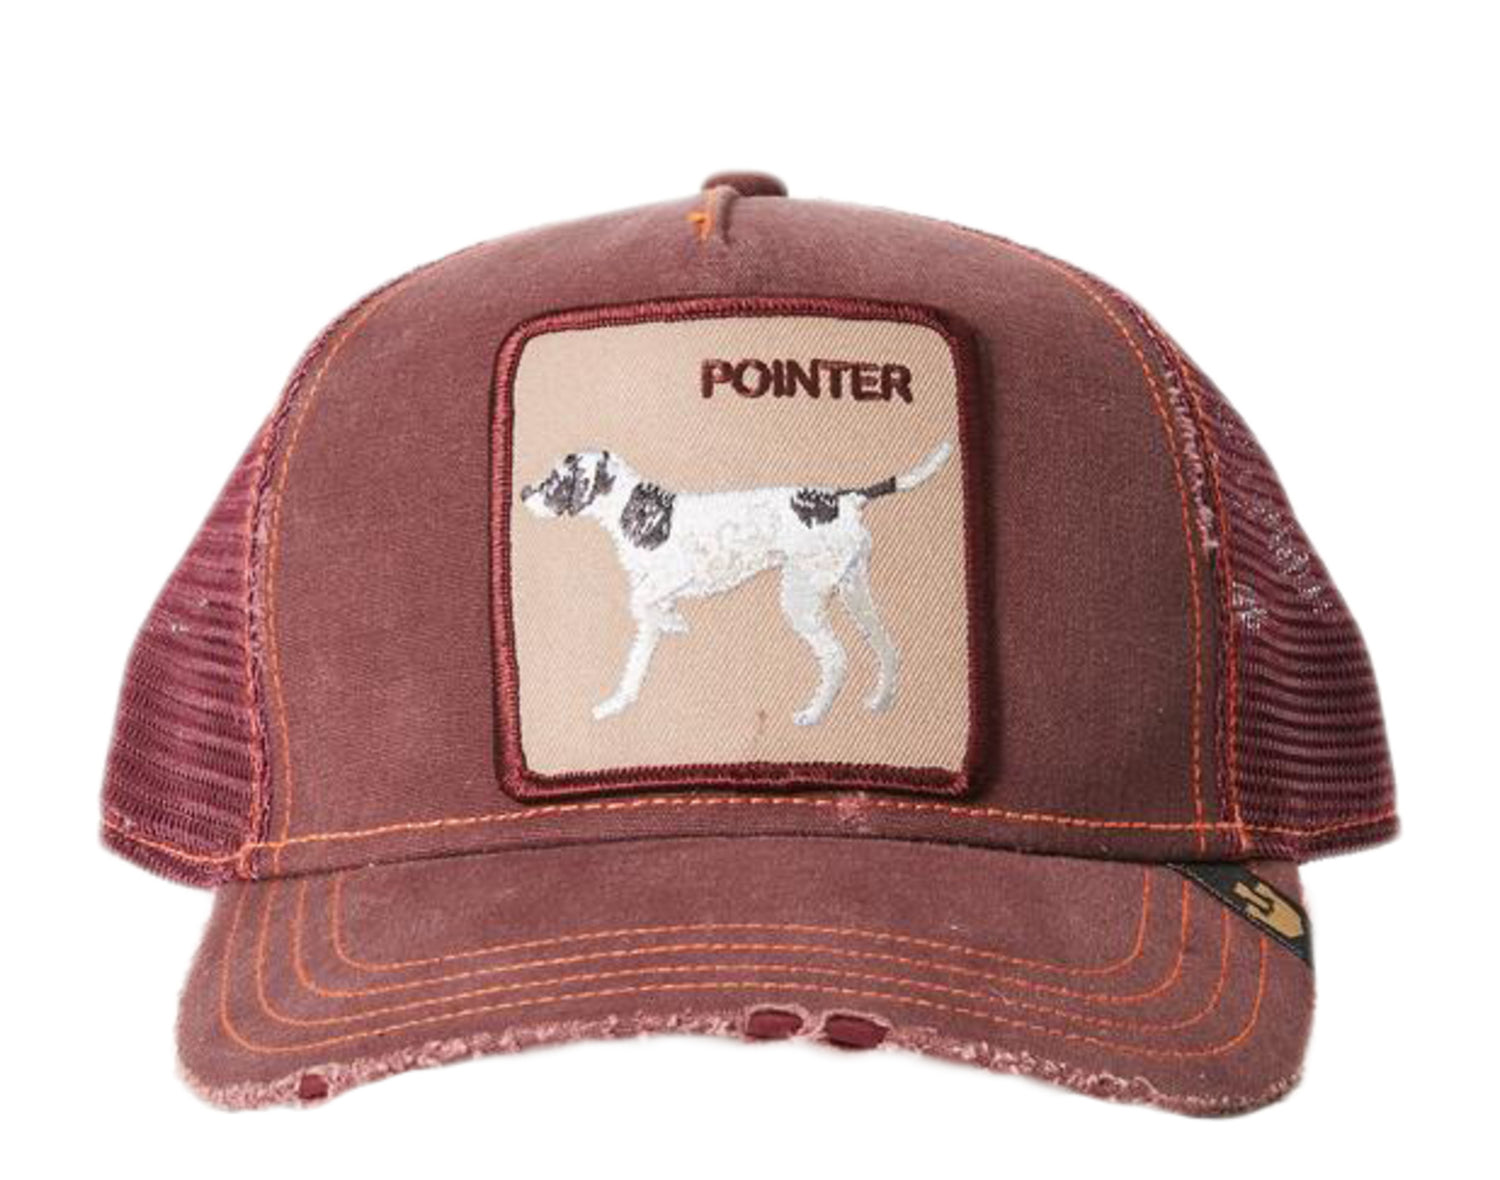 Goorin Bros The Pointer Trucker Hat